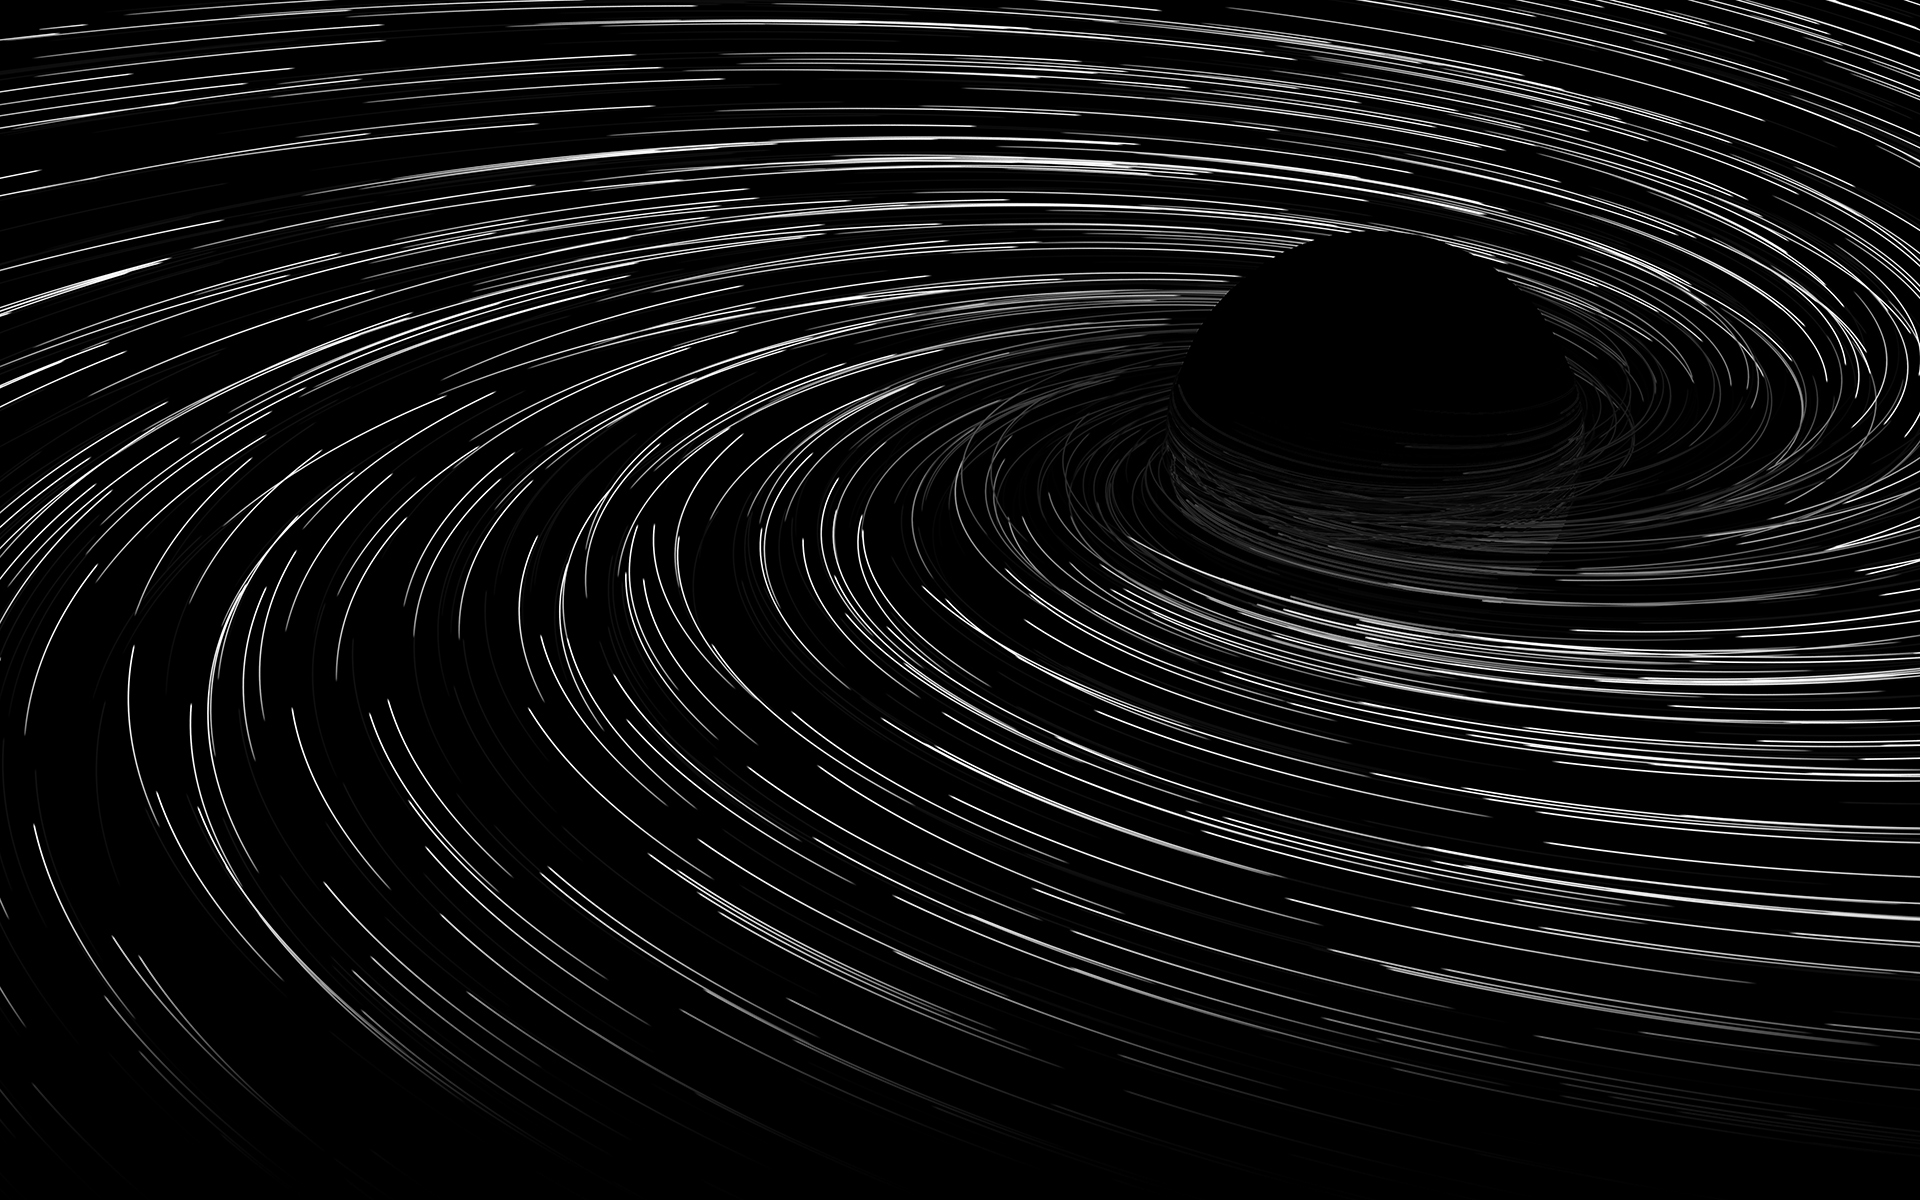 Nền tối giản đơn của lỗ đen sẽ giúp bạn có được một không gian làm việc thật sự tập trung và sáng tạo. Độ đen tối của nó sẽ tôn lên sự trang trọng và giản đơn mà không làm mất đi sự hiện đại của nó.